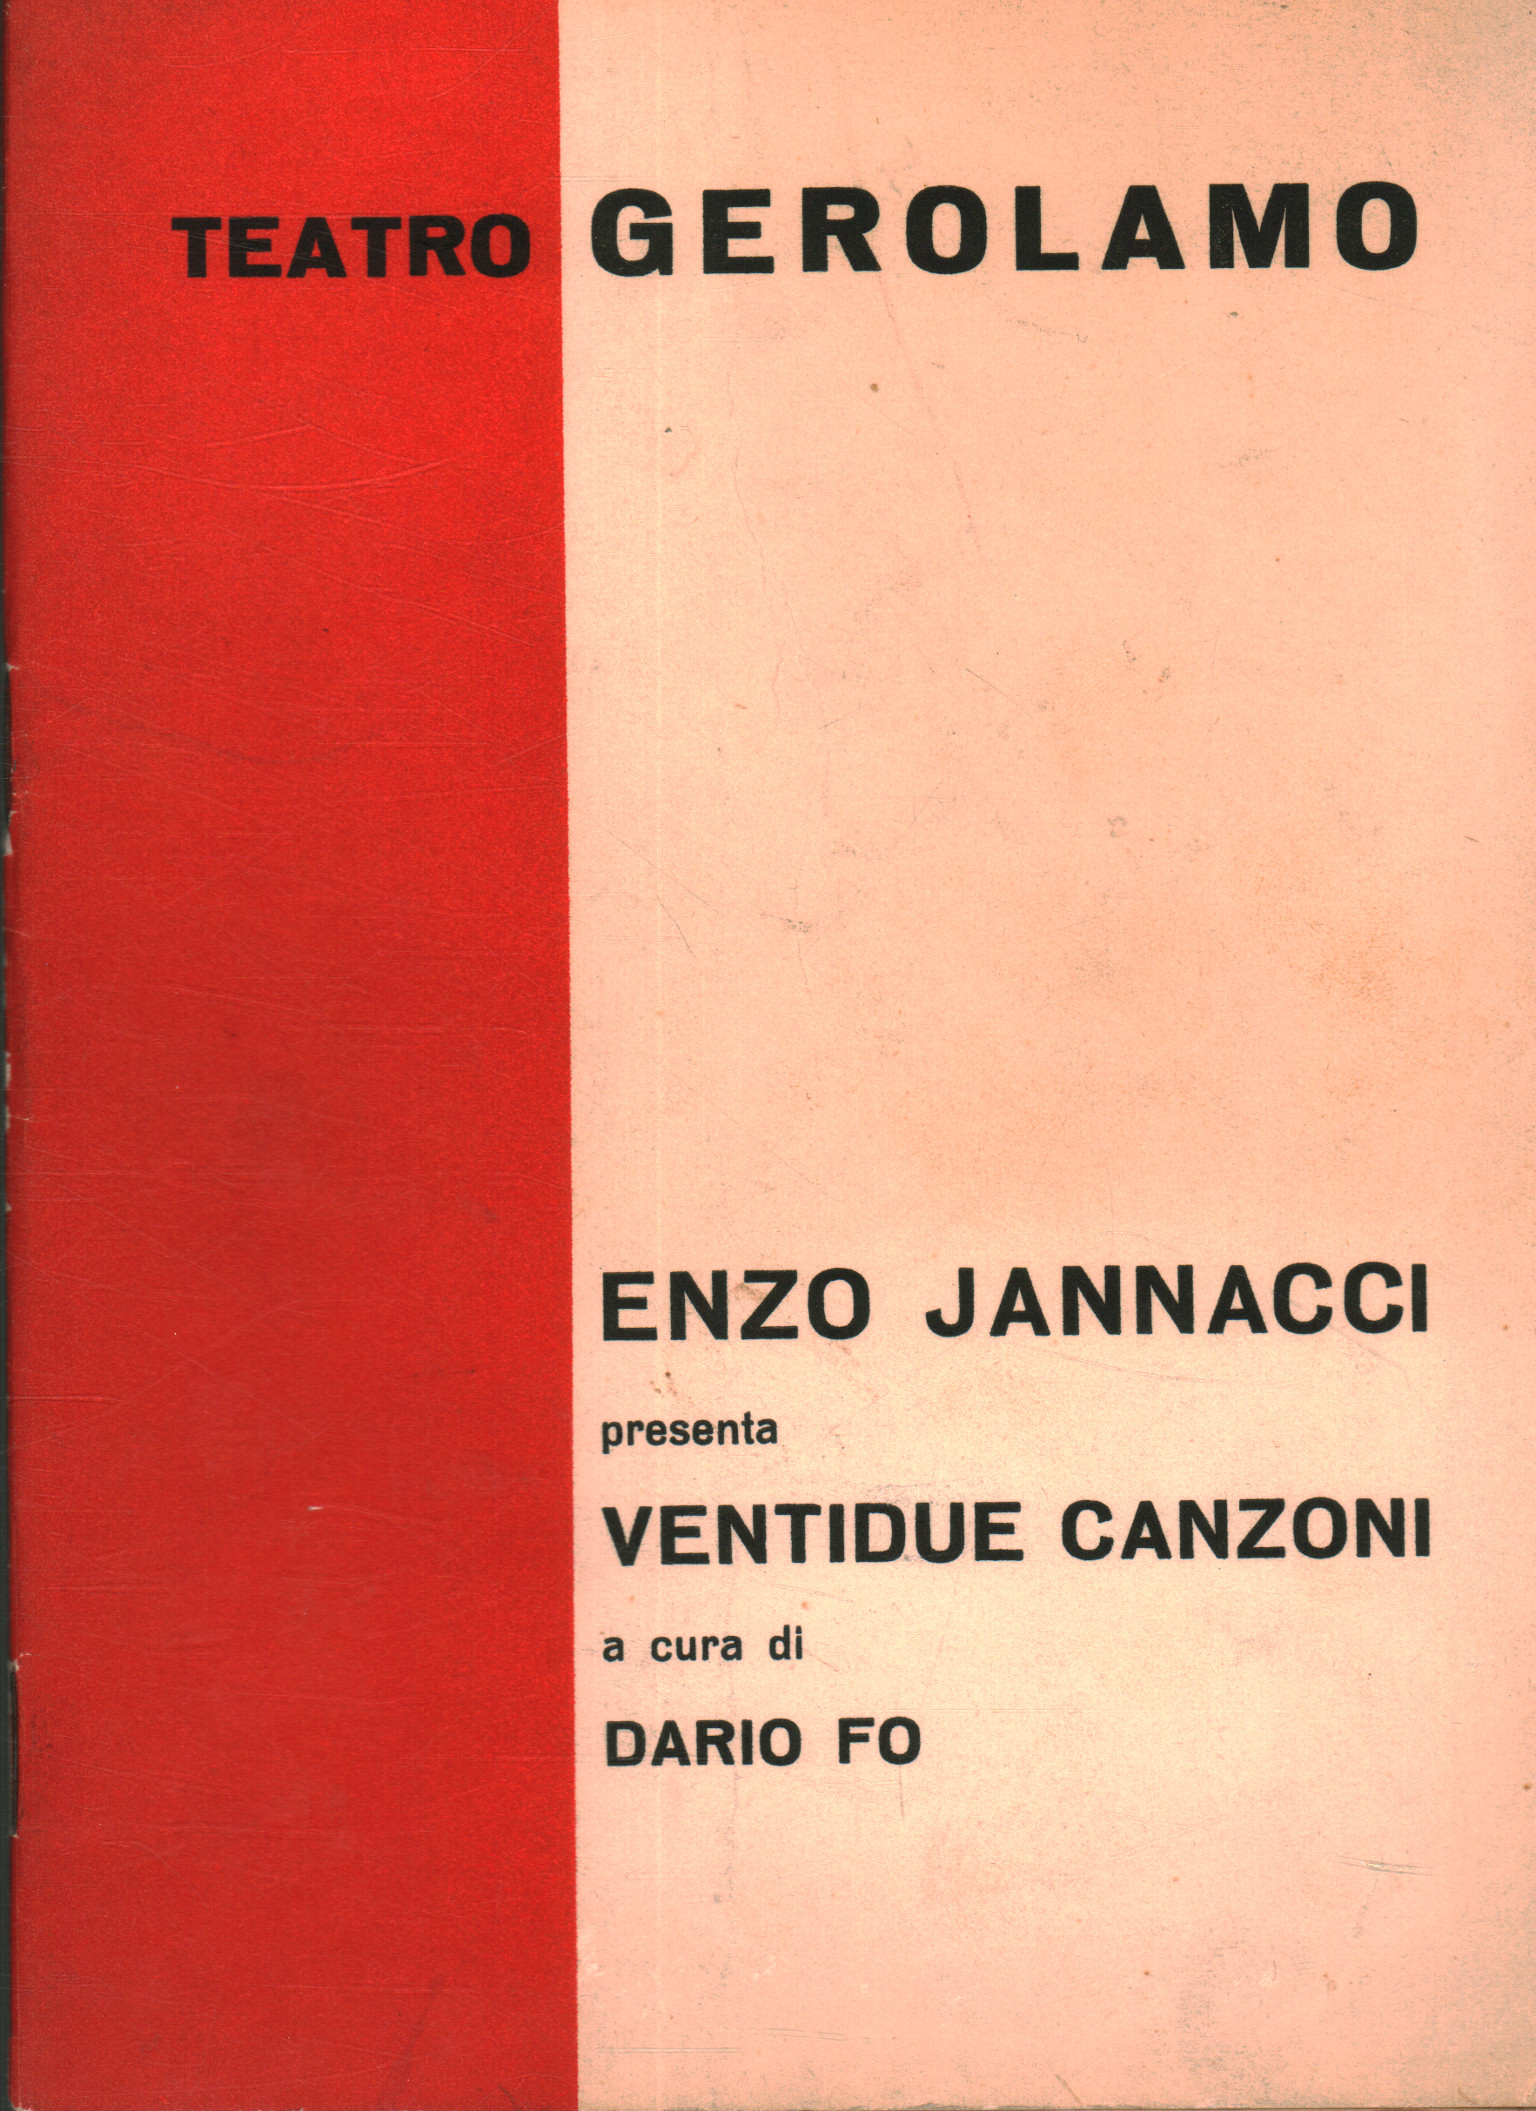 Zweiundzwanzig Lieder, Enzo Jannacci